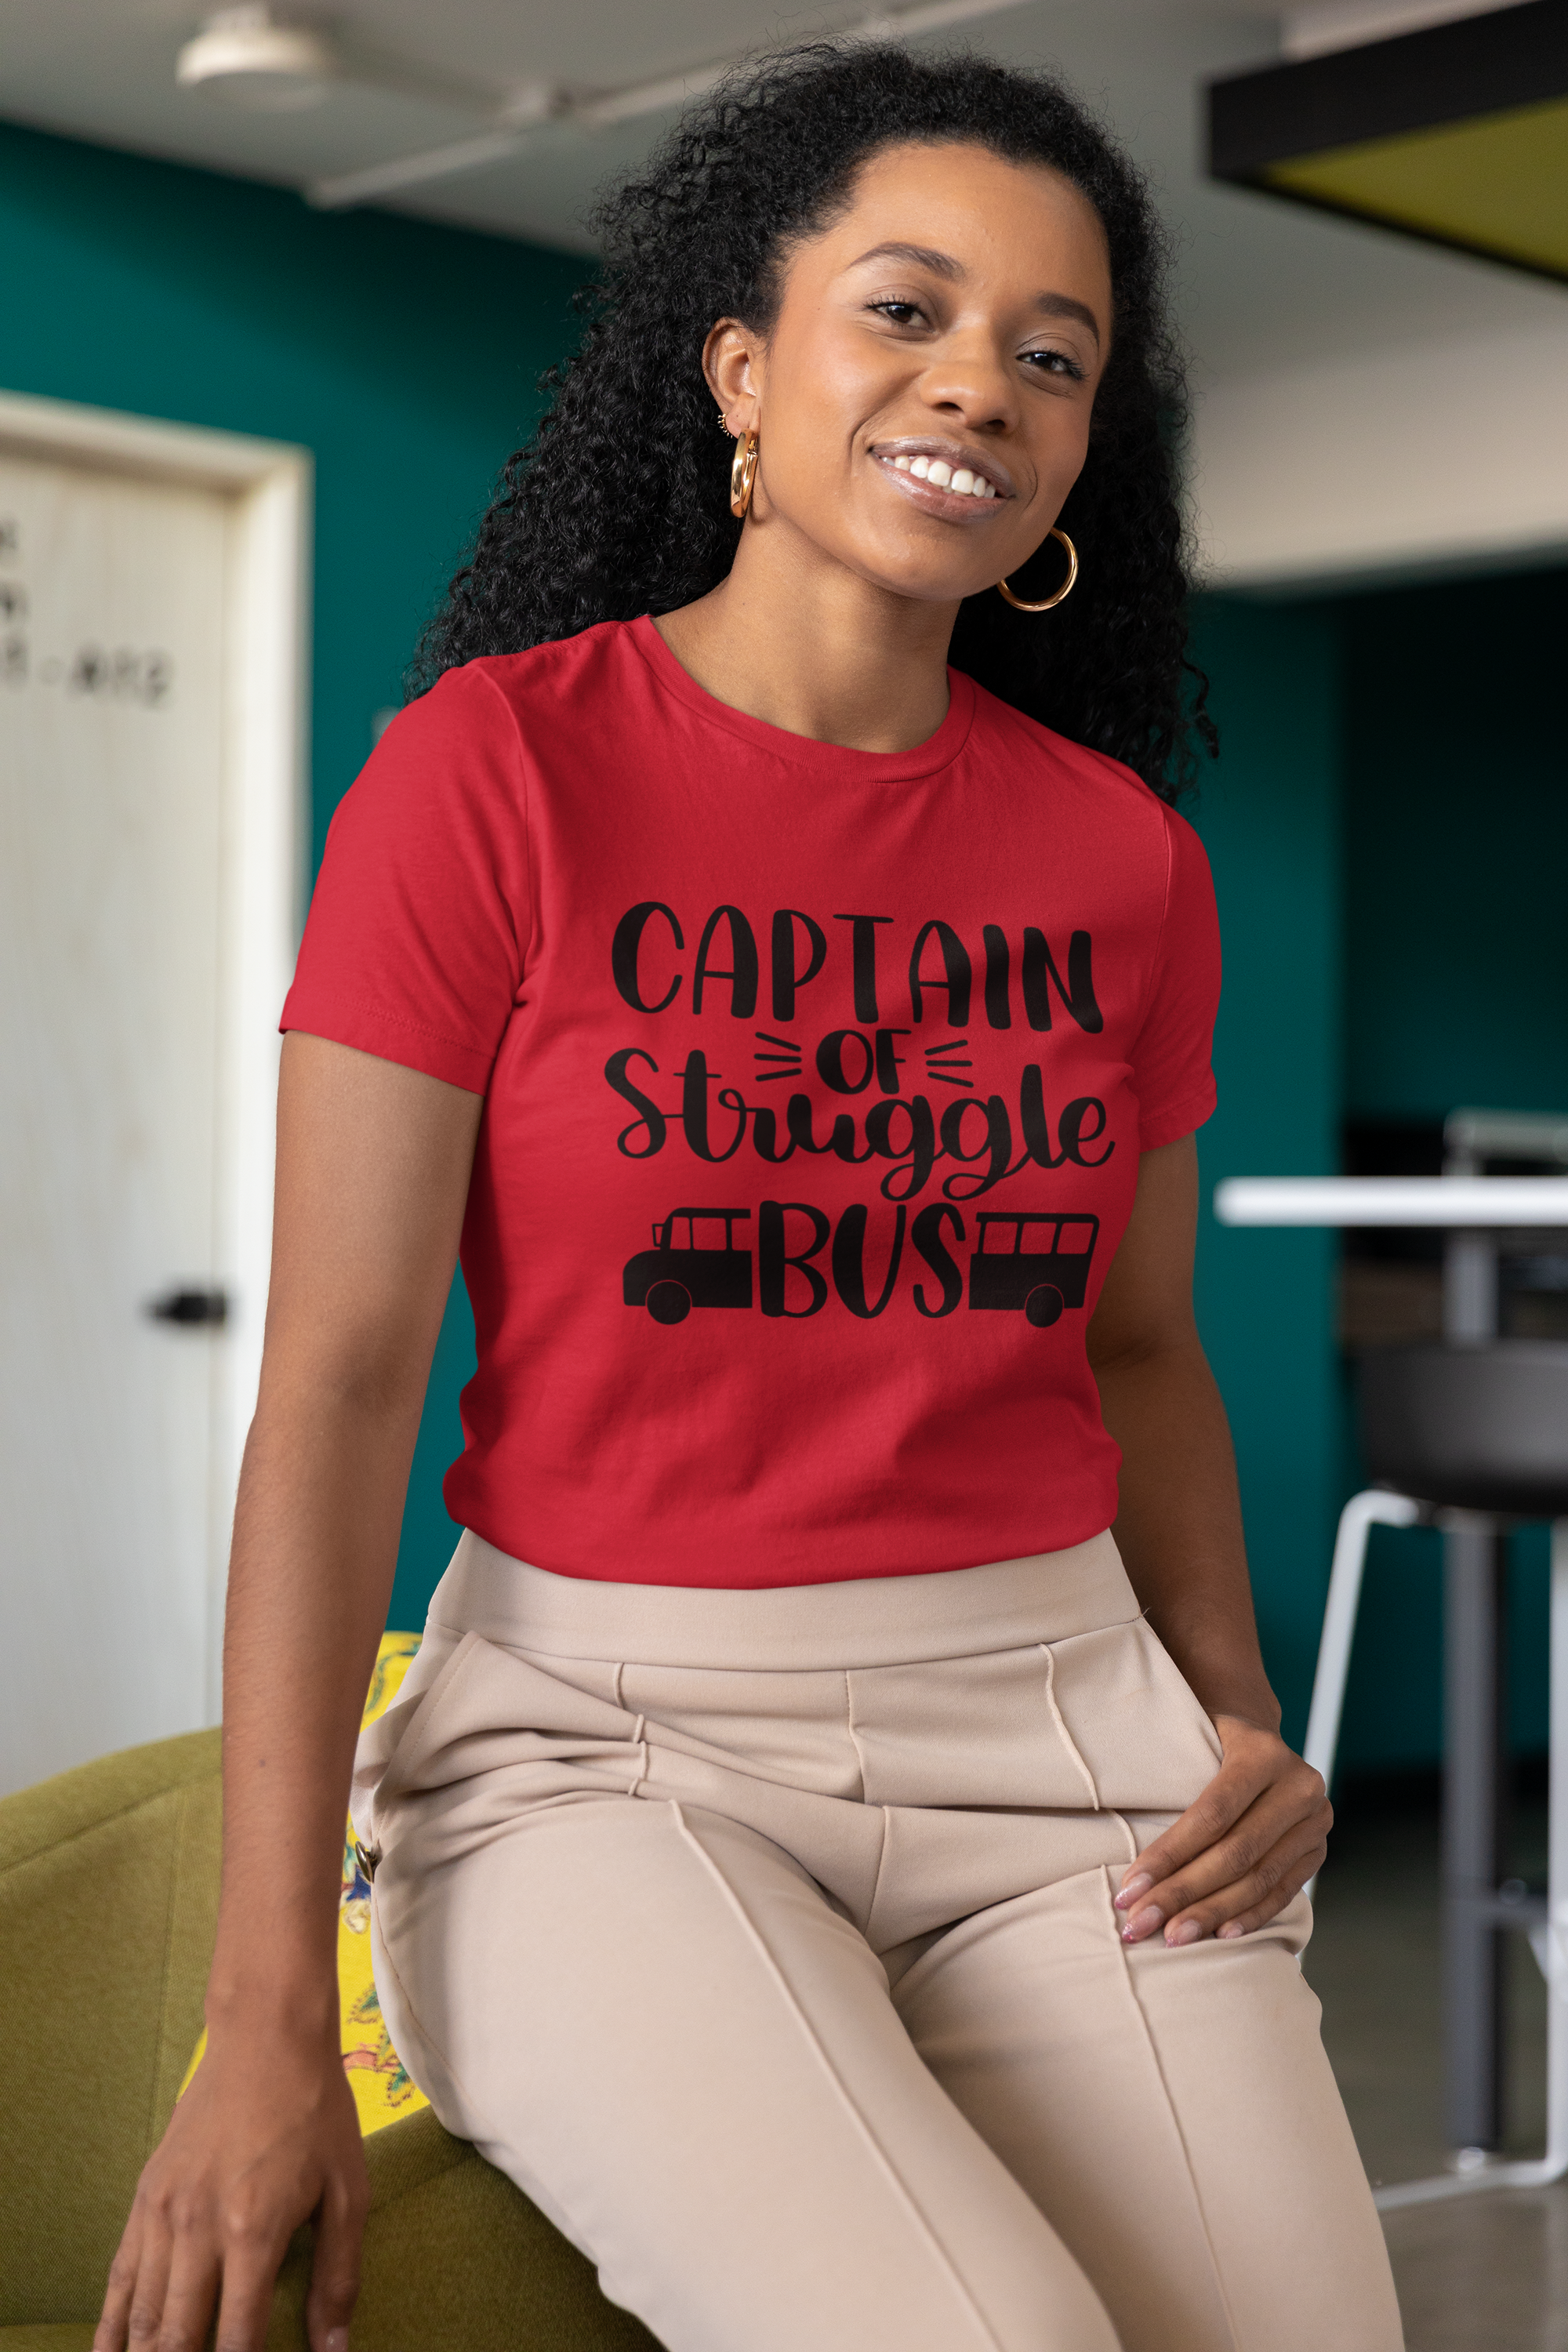 Captain Of Struggle Bus Women Unisex t-shirt, Black Ladies Fit Shirt